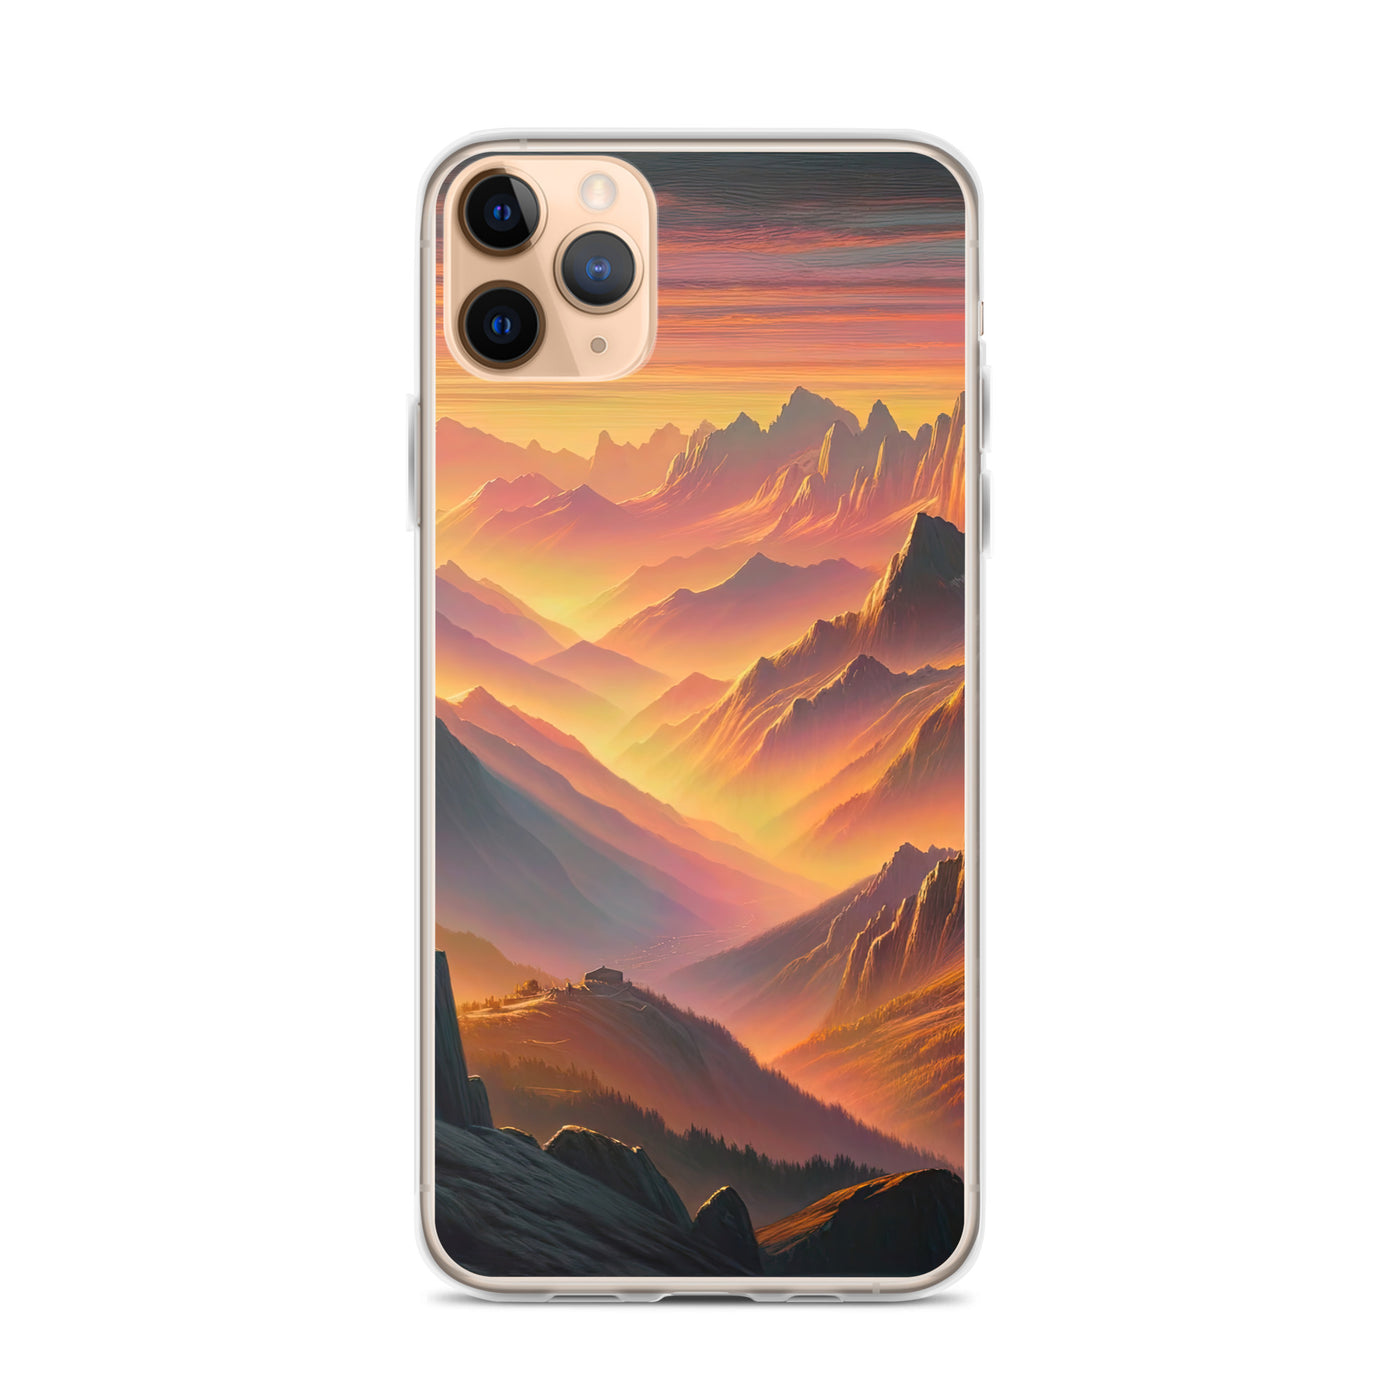 Ölgemälde der Alpen in der goldenen Stunde mit Wanderer, Orange-Rosa Bergpanorama - iPhone Schutzhülle (durchsichtig) wandern xxx yyy zzz iPhone 11 Pro Max